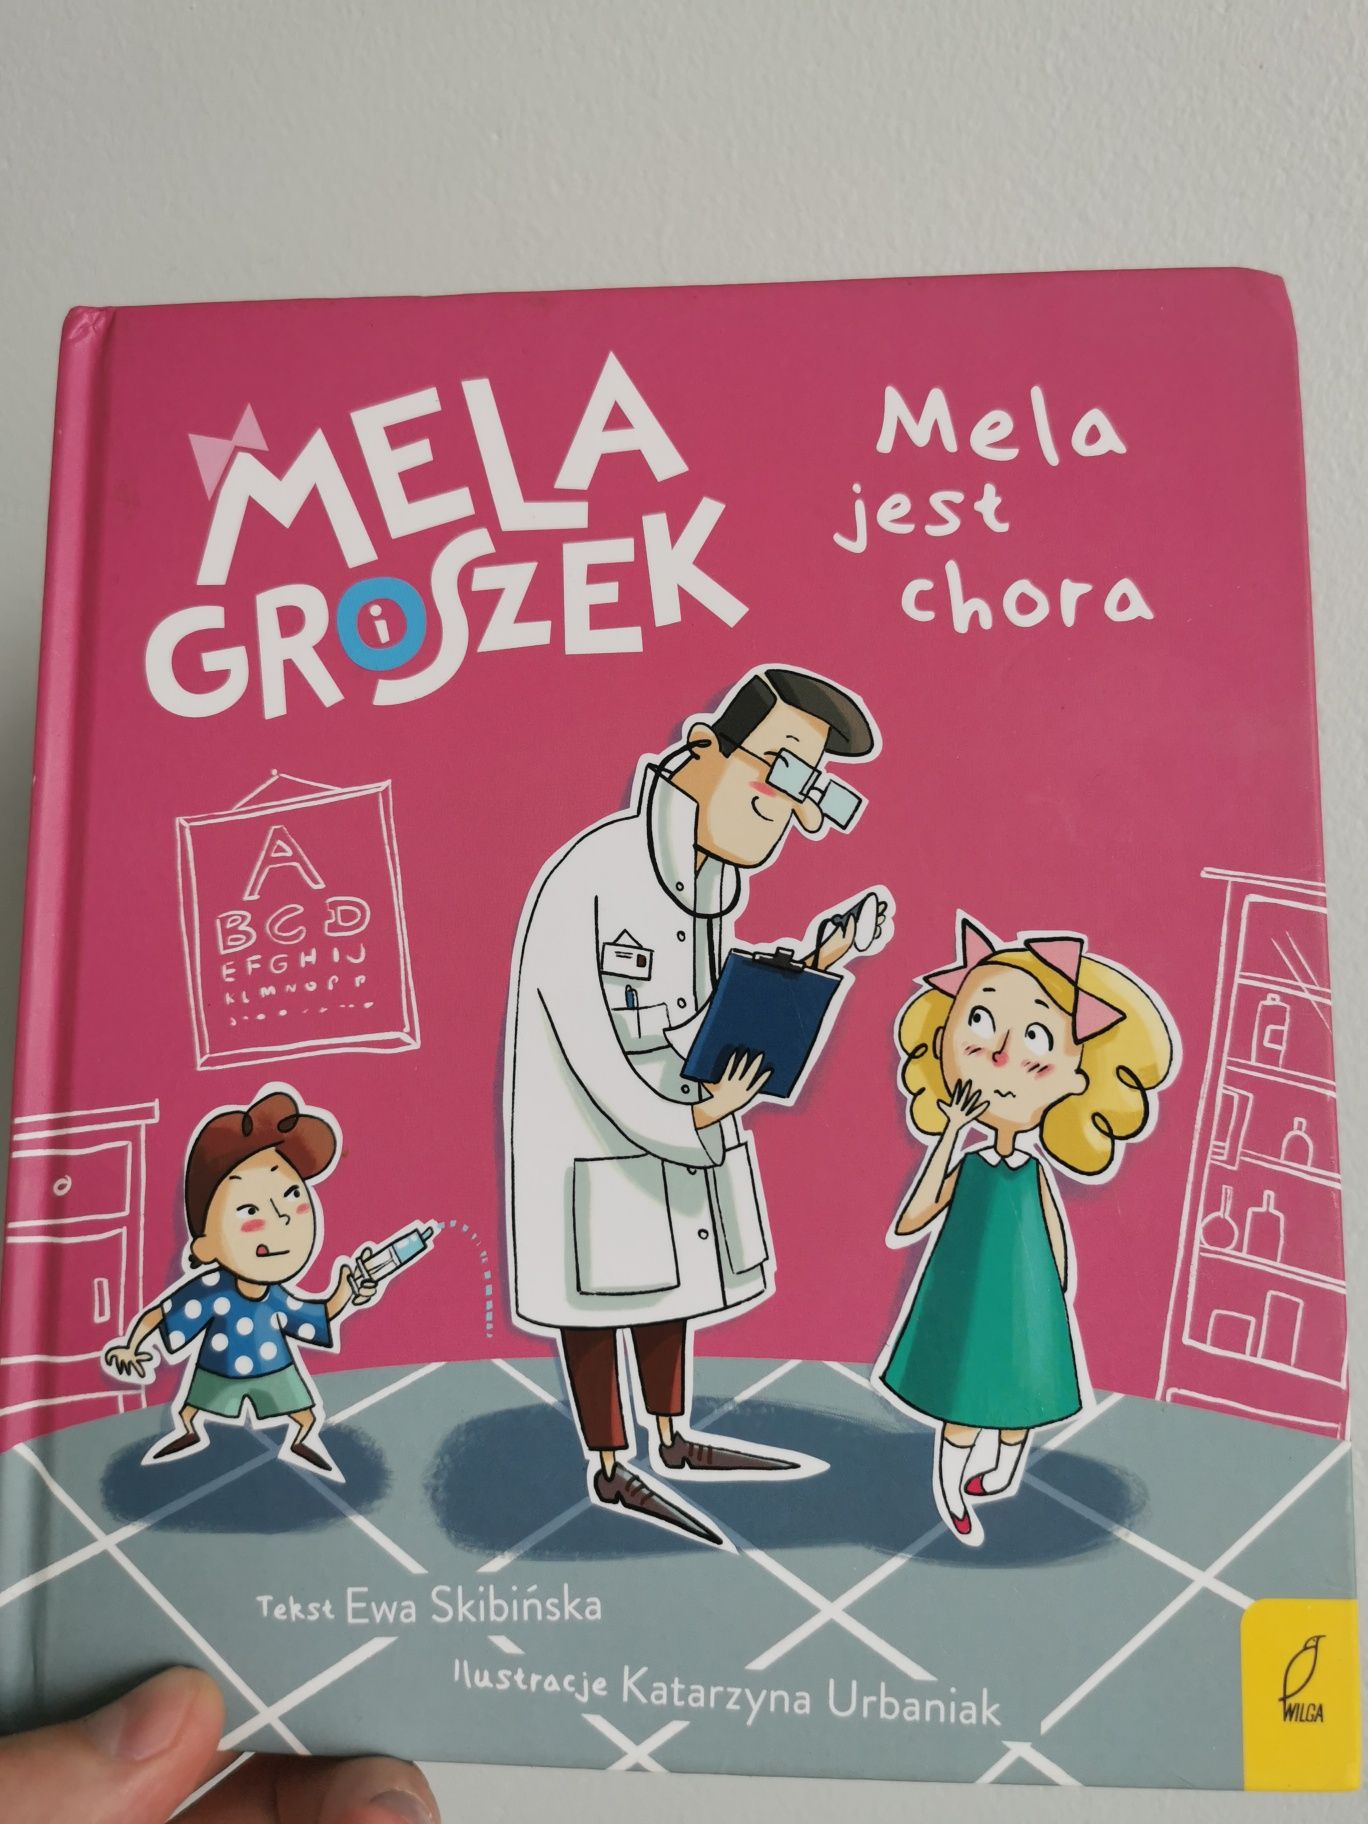 Mela i Groszek - Mela jest chora